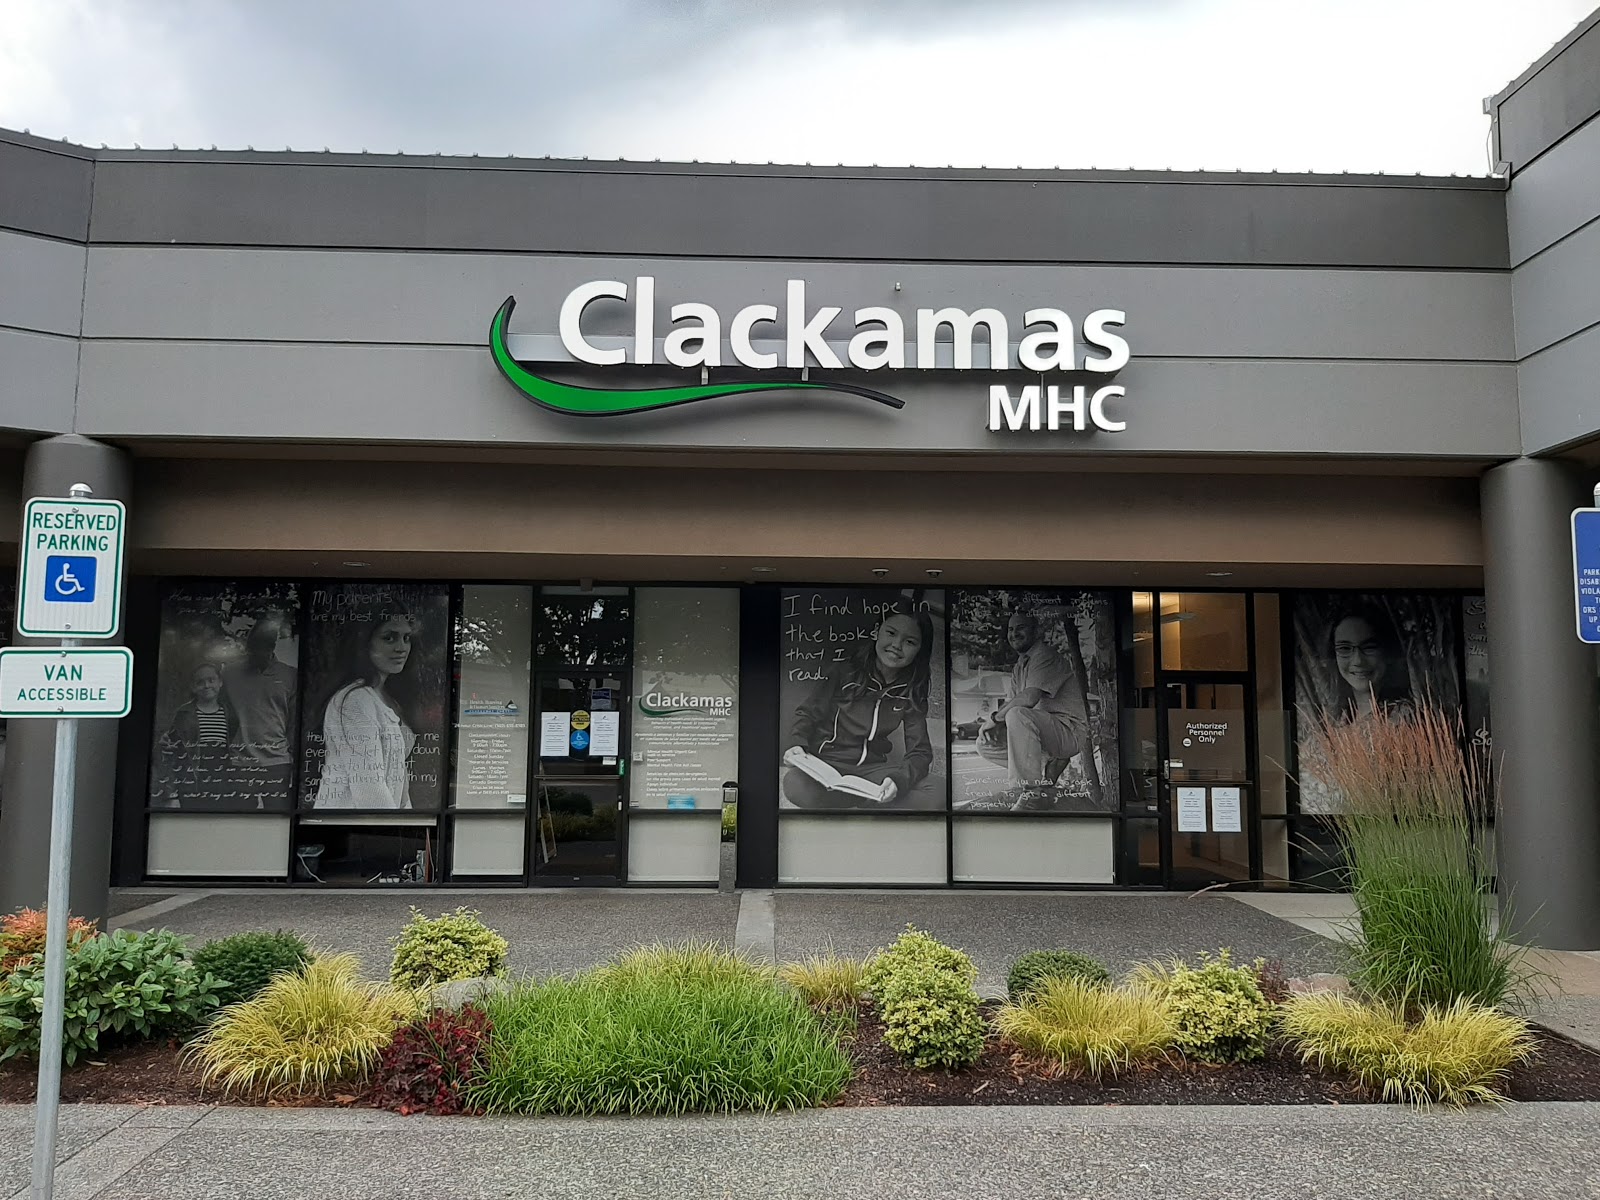 Clackamas County Behavioral Health - Clackamas MHC